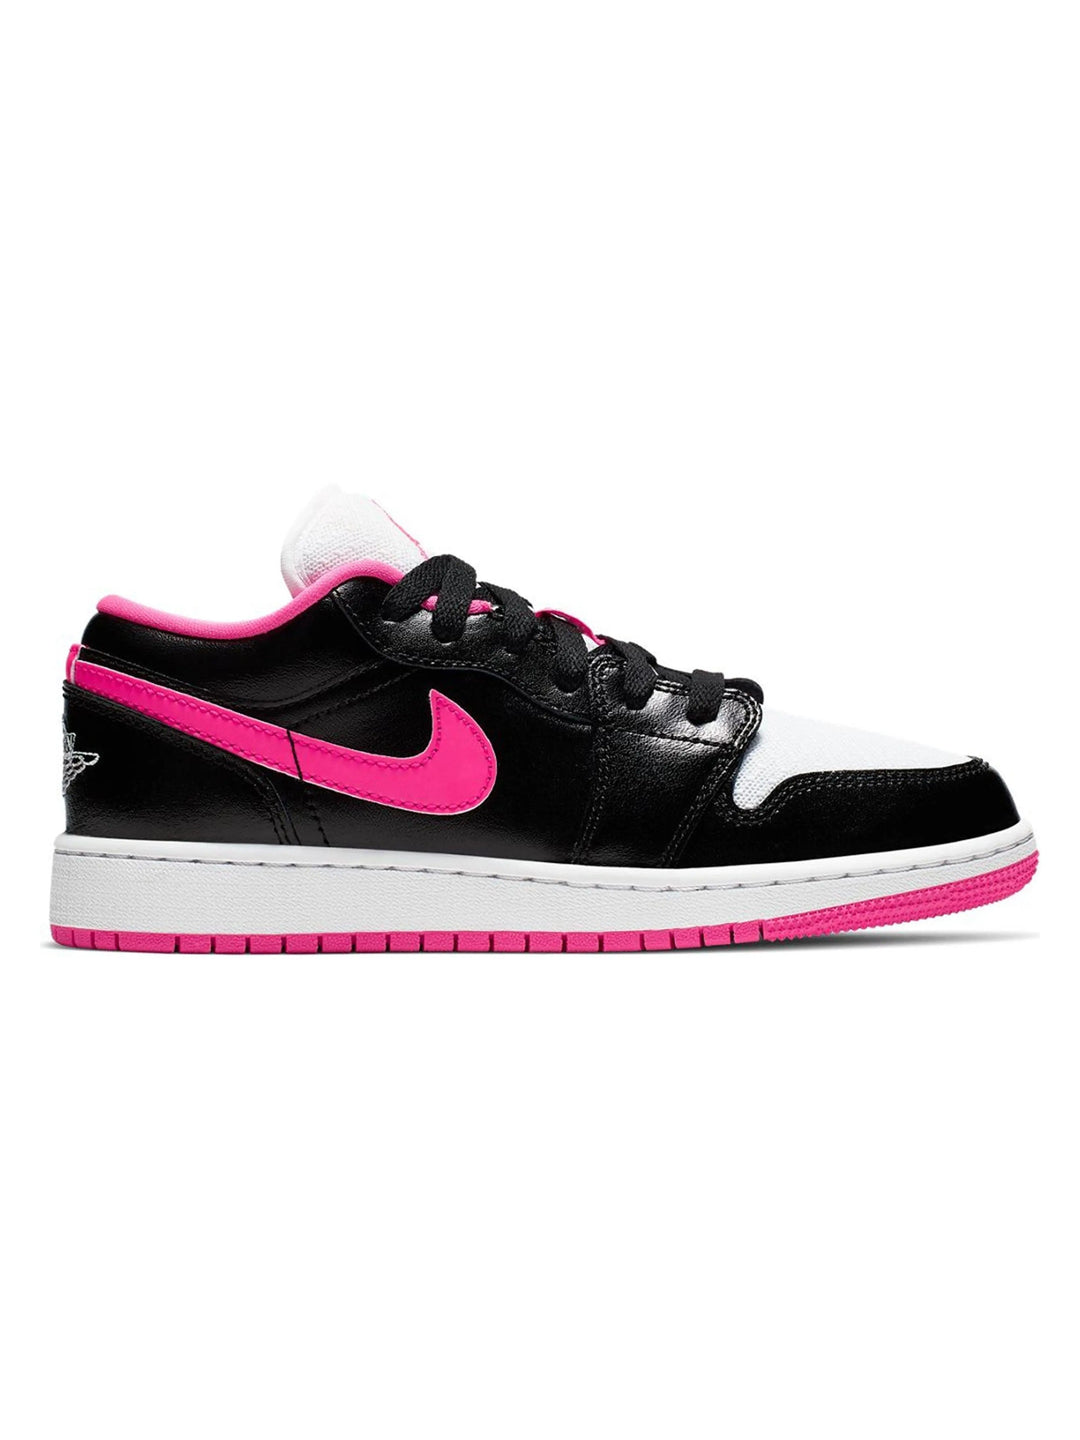 Nike Air Jordan 1 Low Black Hyper Pink Prior